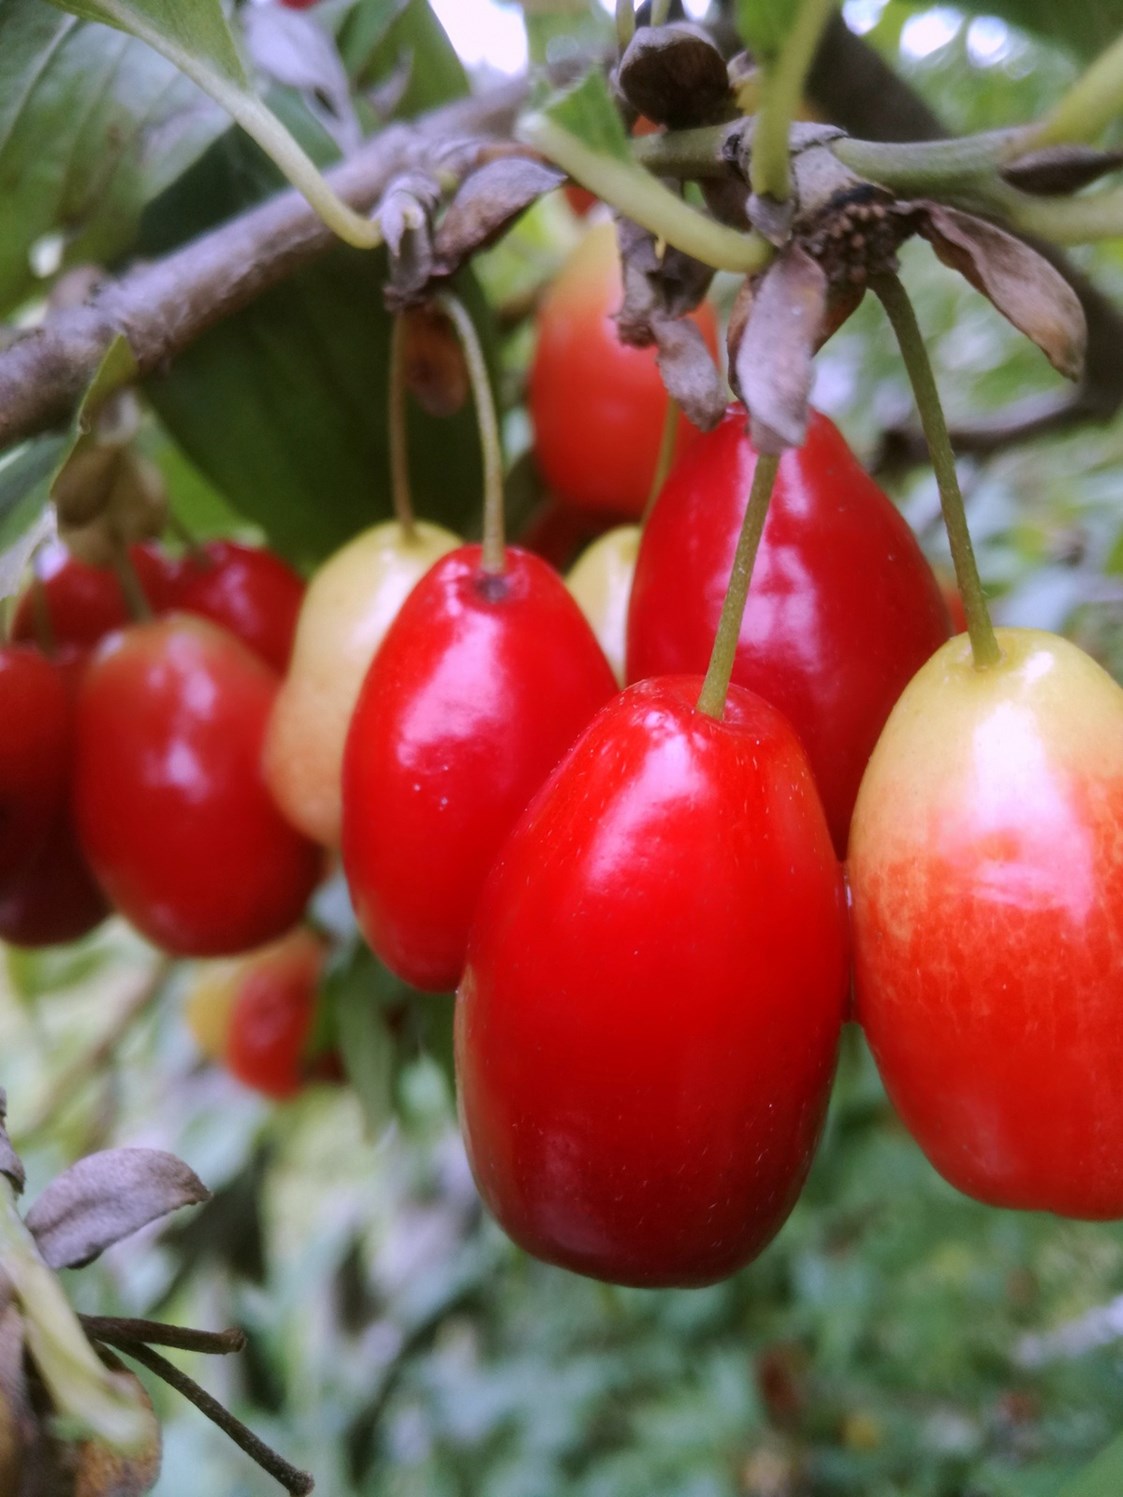 Unternehmen: Cornus mas - Dirndlstrauch mit Früchten, die sich besonders für sehr aromatische Marmeladen und Gelees eignen. - Biobaumschule Eschenhof